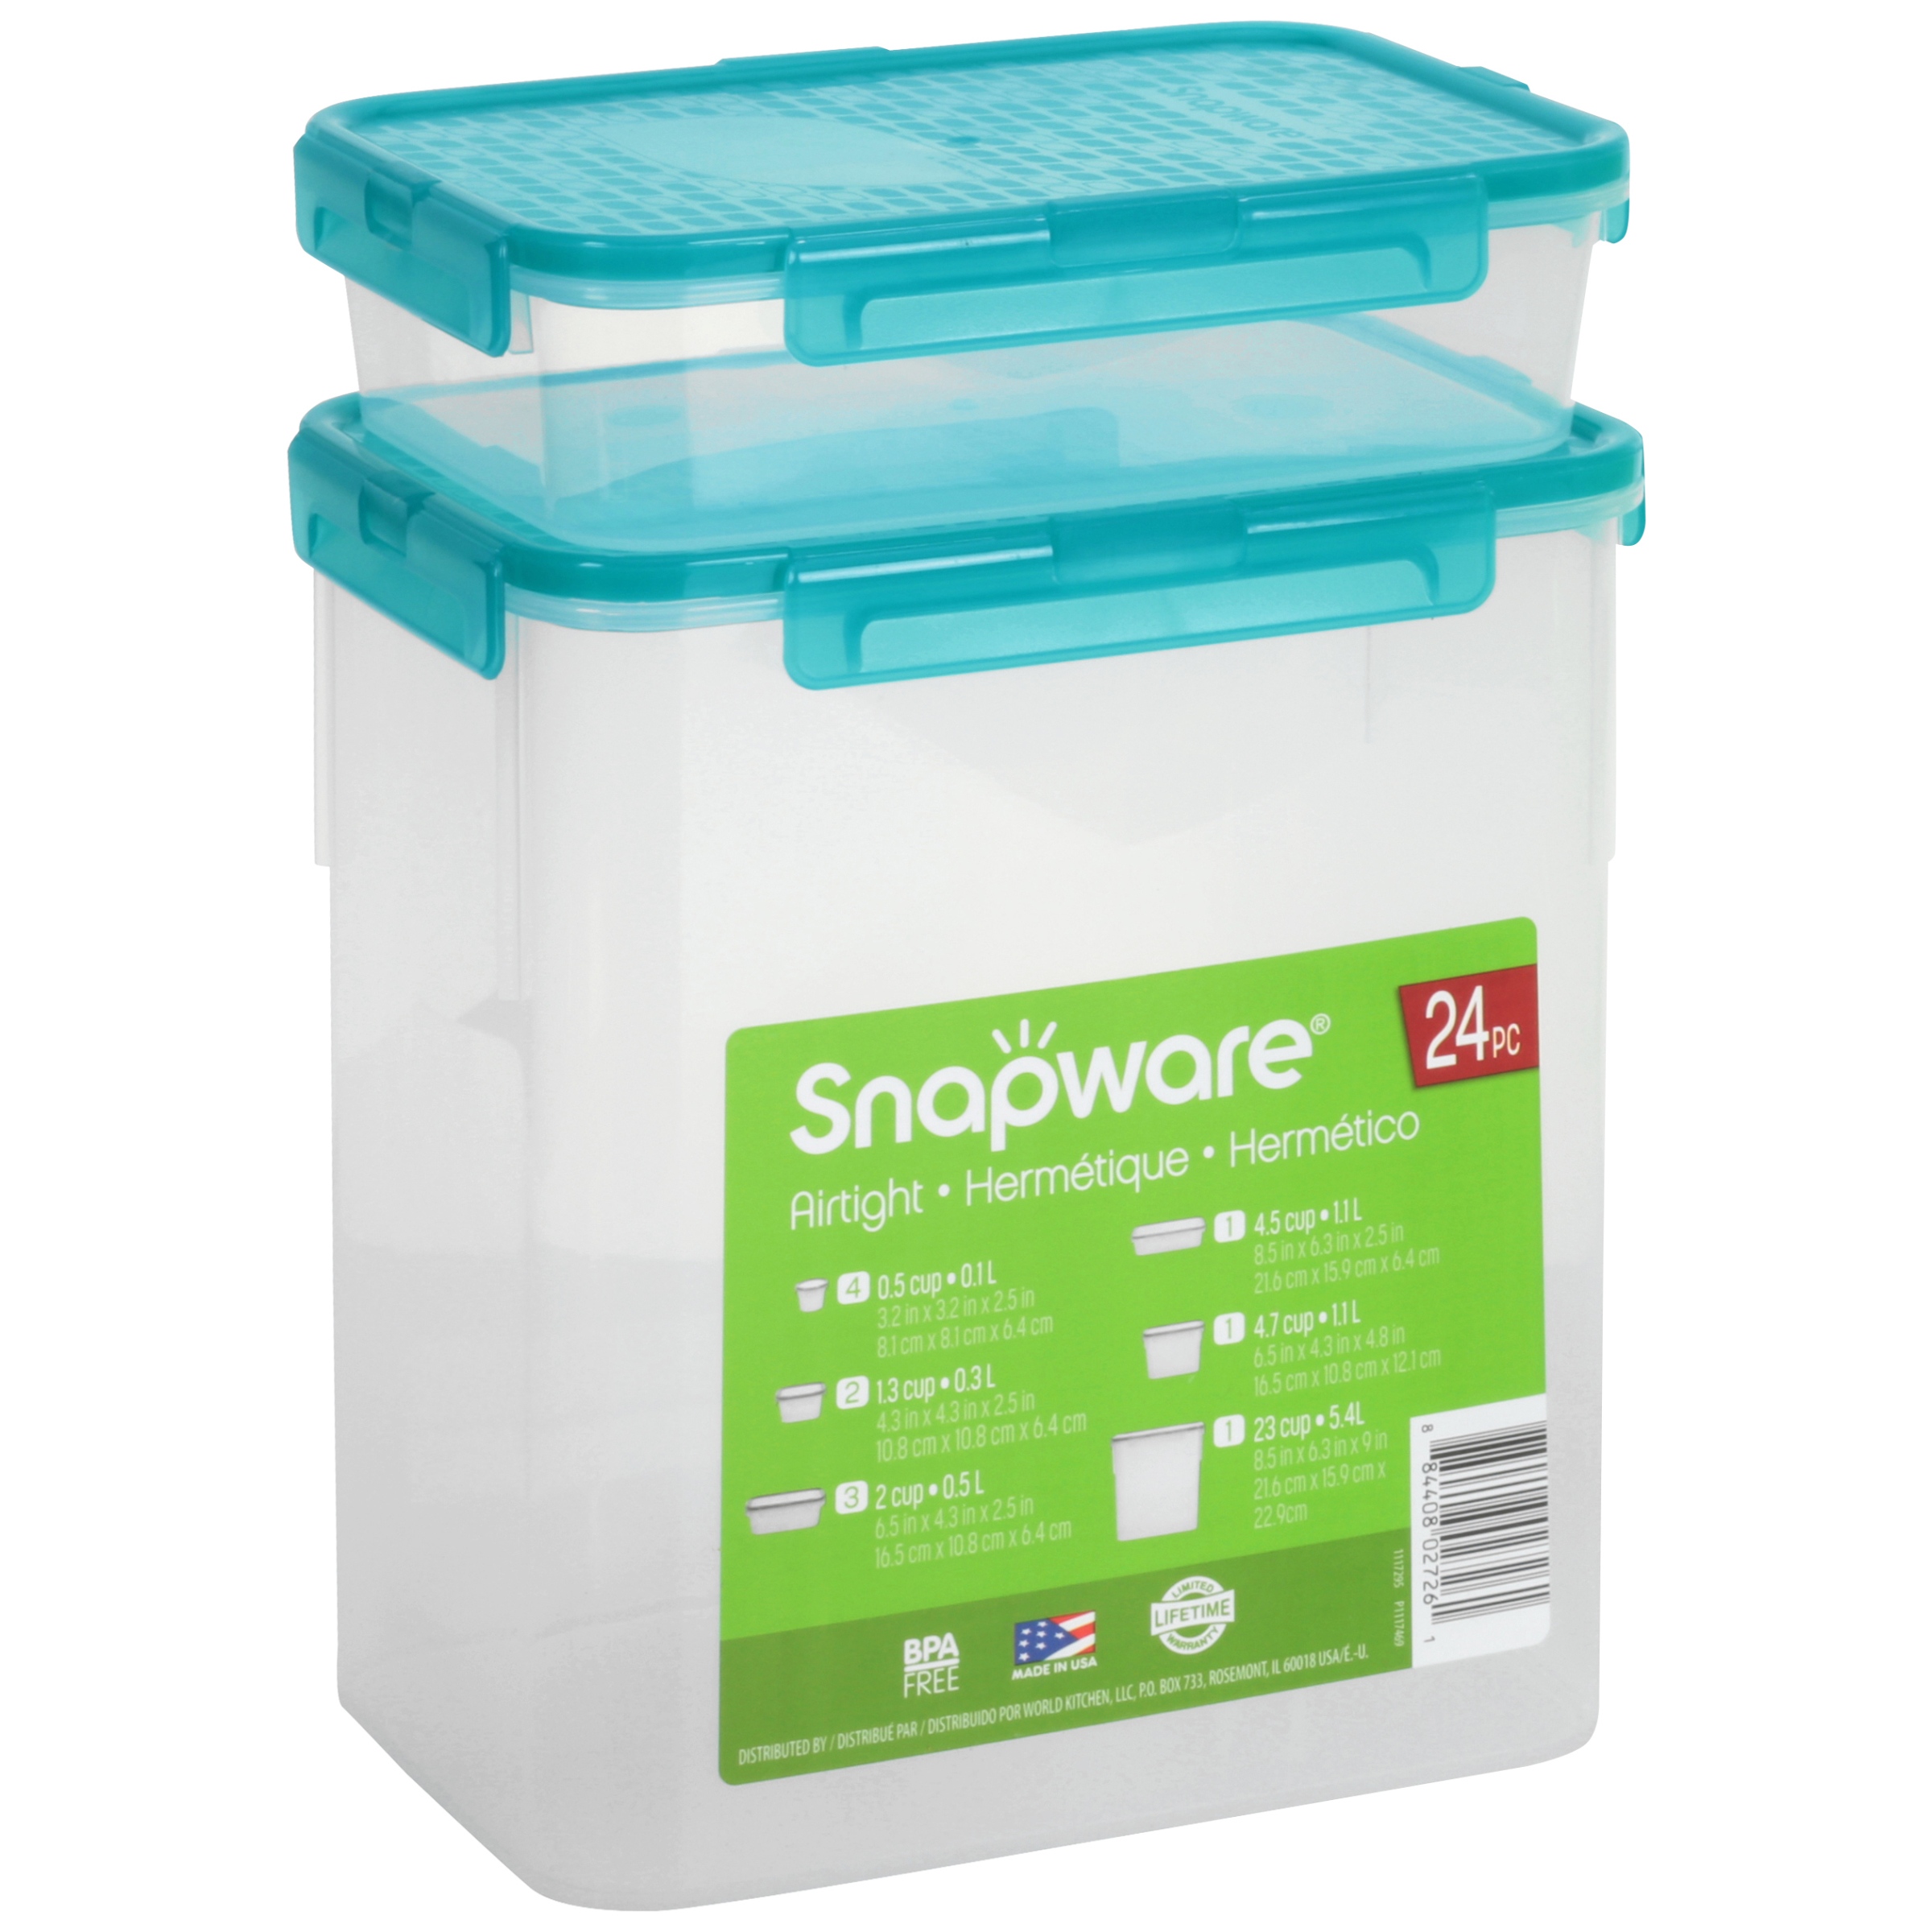 Snapware Airtight 24-Piece Food Storage Set - image 4 of 6